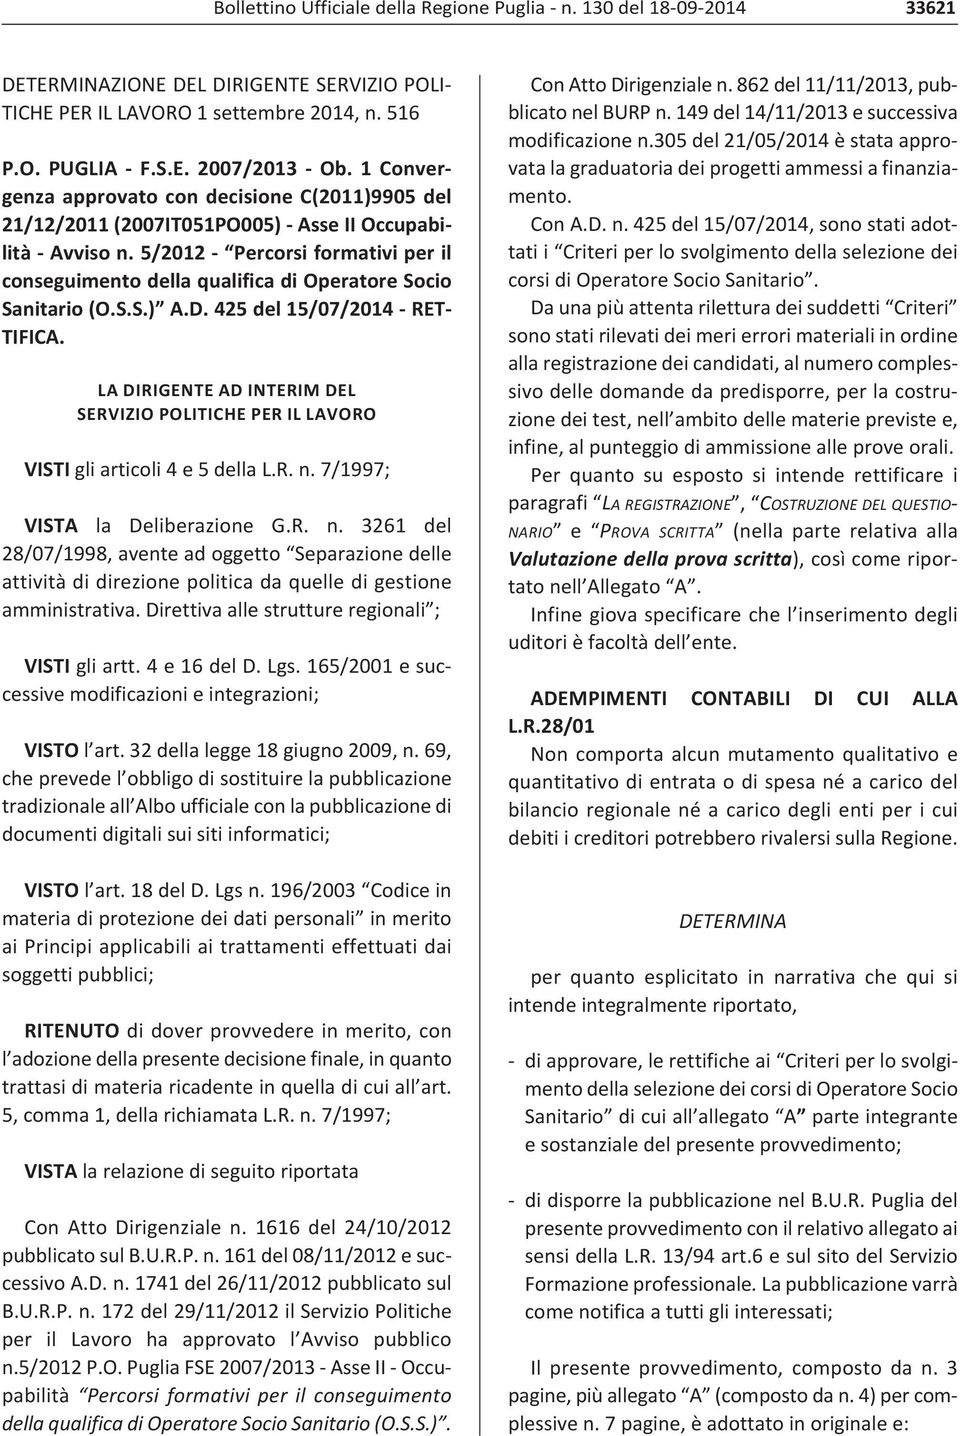 5/2012 Percorsi formativi per il conseguimento della qualifica di Operatore Socio Sanitario (O.S.S.) A.D. 425 del 15/07/2014 RET TIFICA.